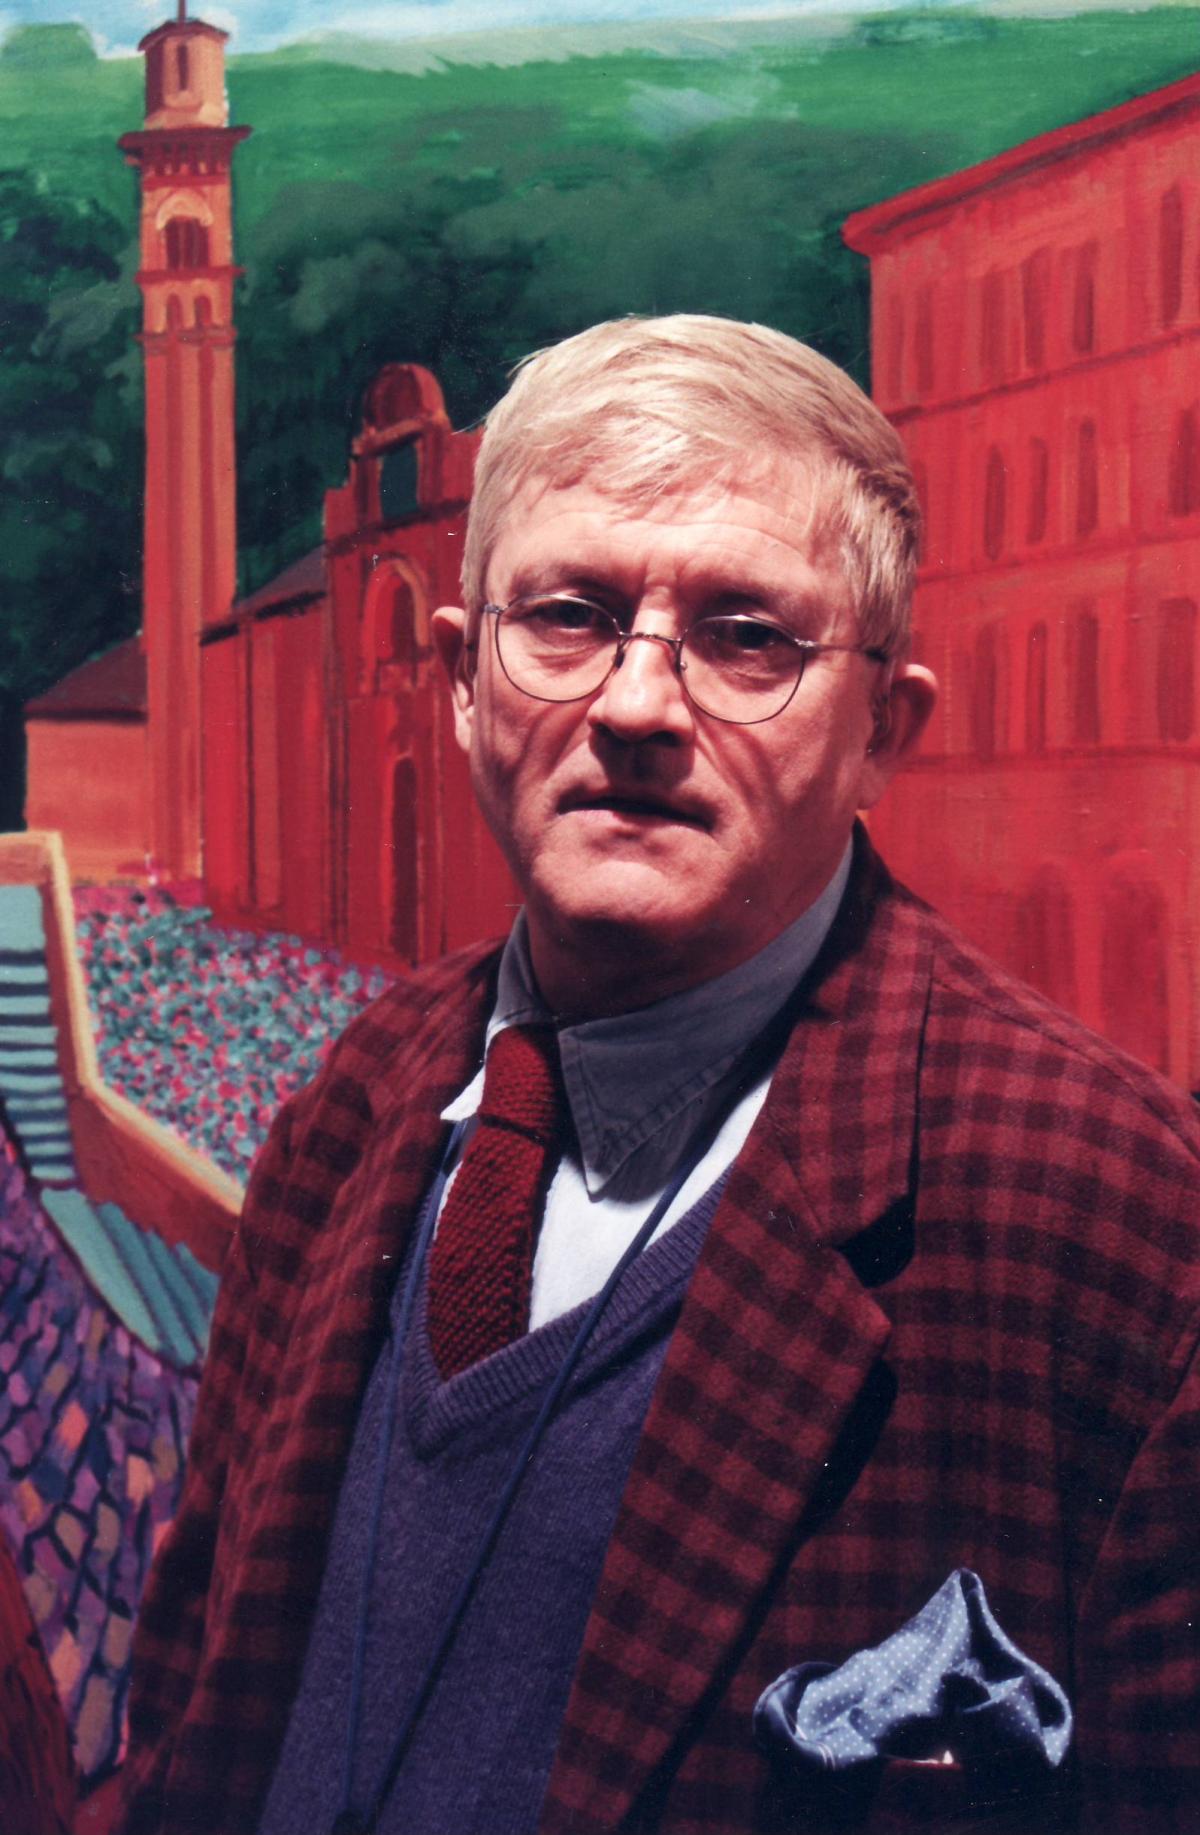 David Hockney 1997